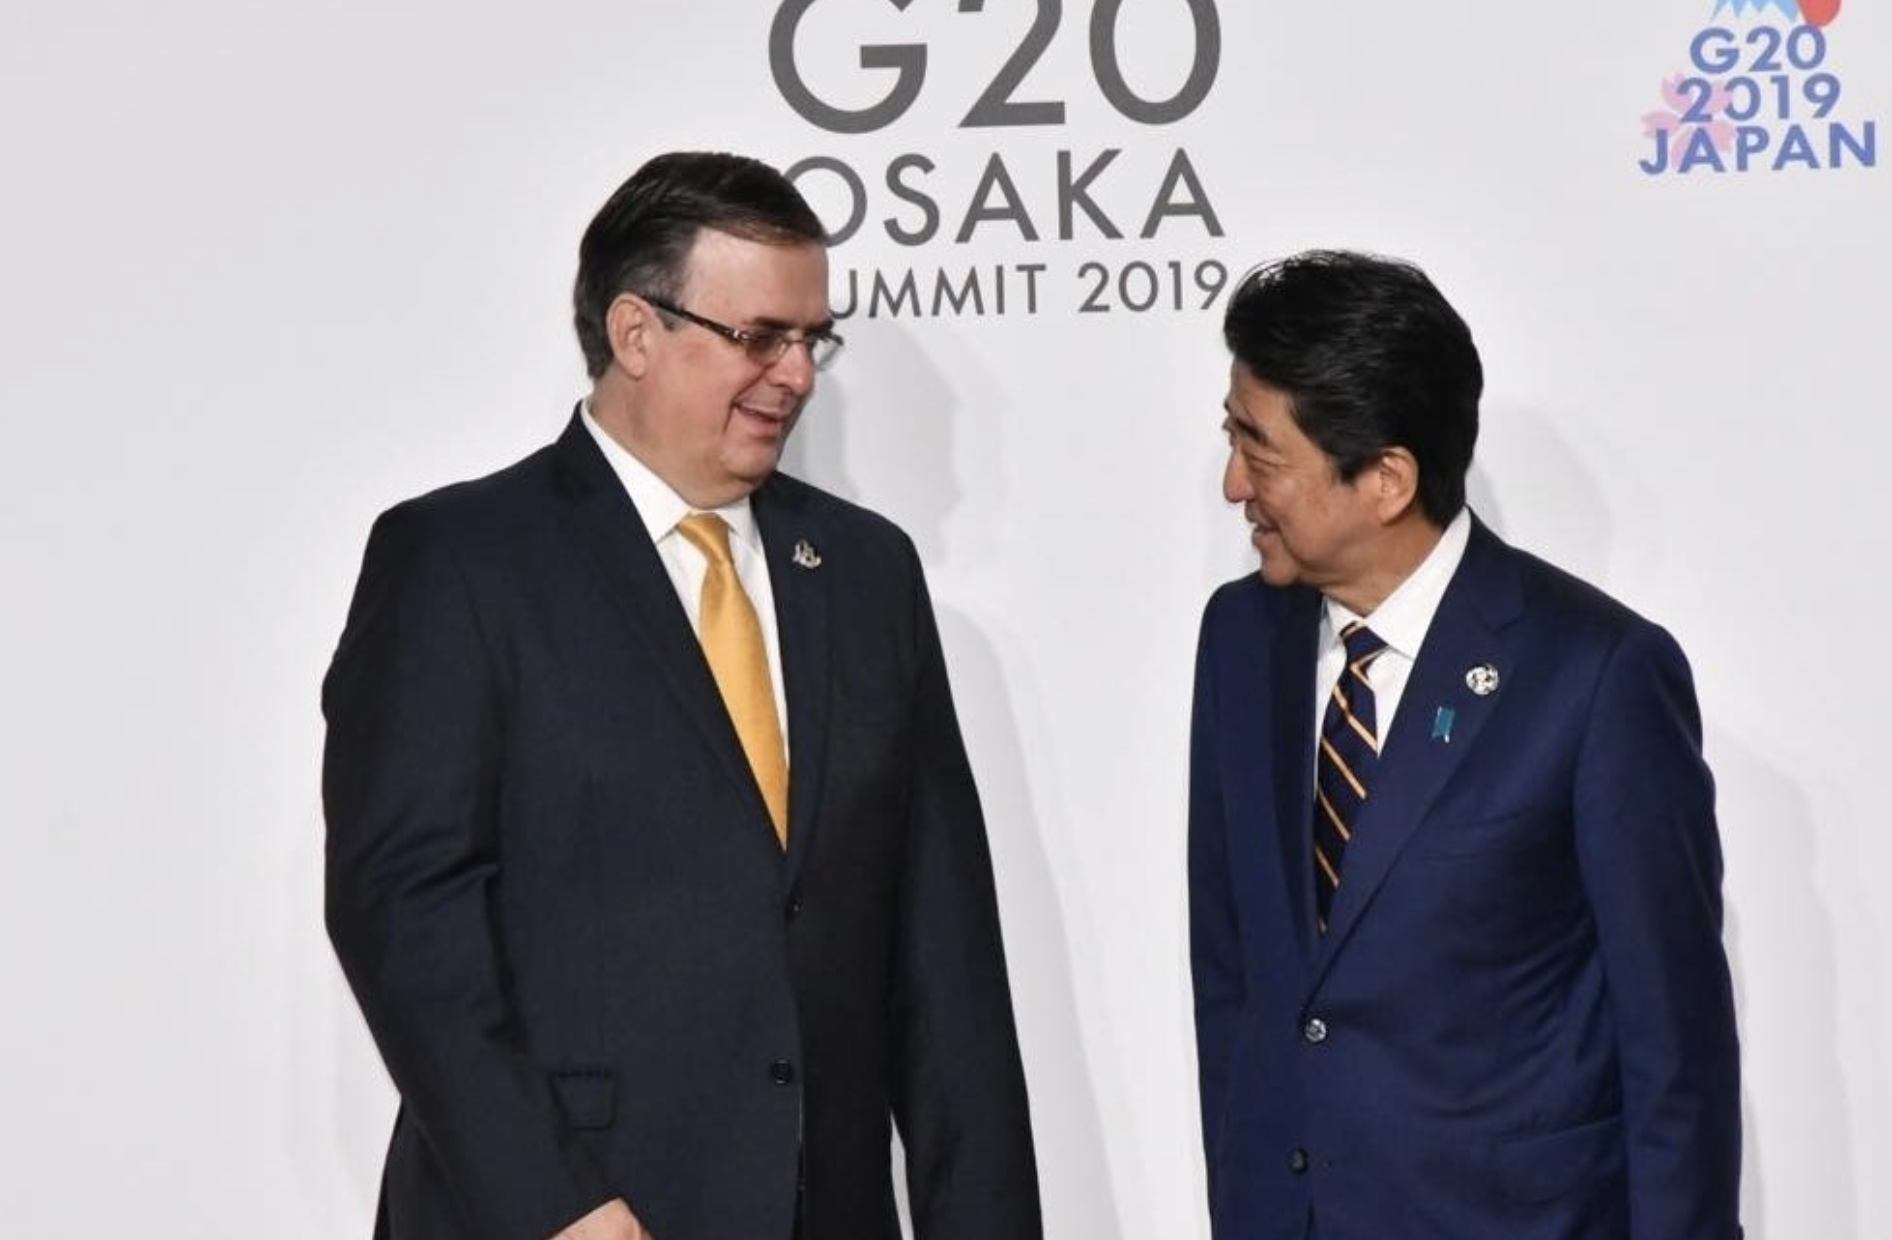 El Secretario de Relaciones Exteriores, Marcelo Ebrard Casaubón, lamentó el fallecimiento del exprimer ministro de Japón. Shinzo Abe.